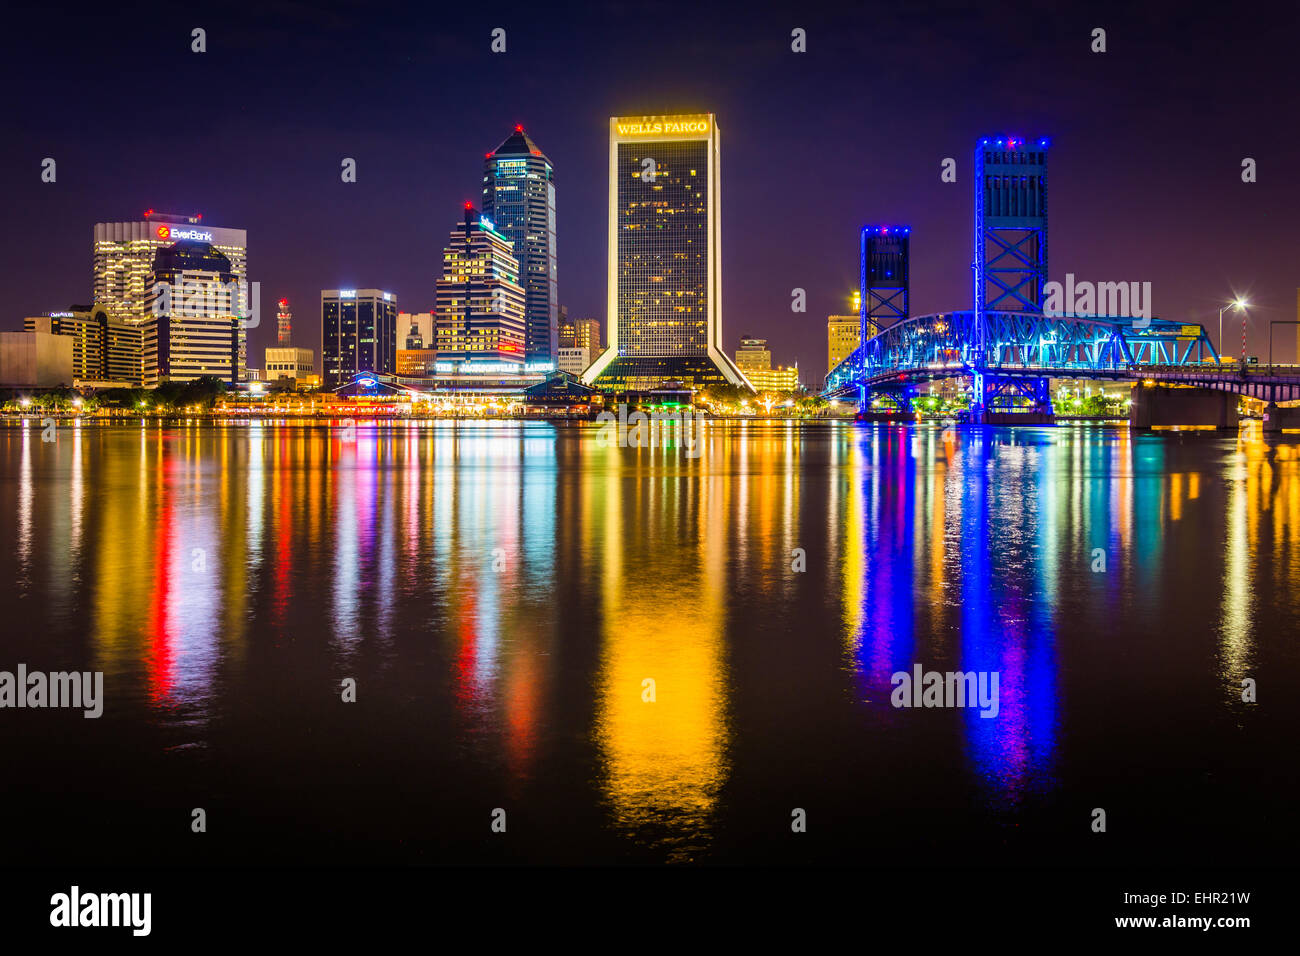 JACKSONVILLE, FLORIDA - JUNE 23: The Jacksonville skyline at night reflecting in St. John's River on June 23, 2014 in Jacksonvil Stock Photo